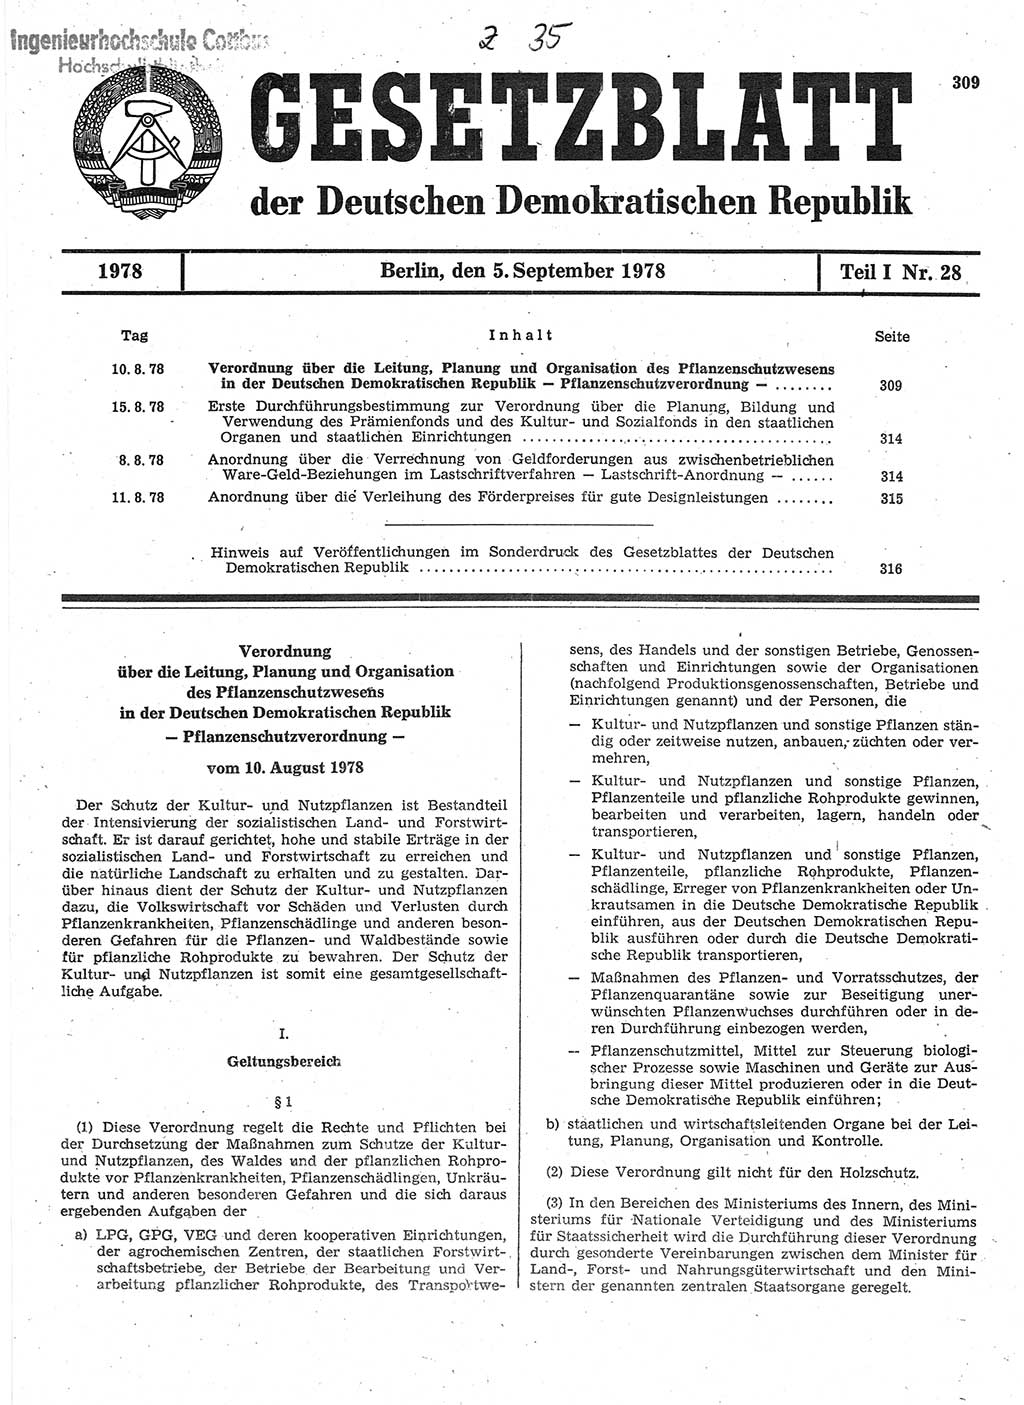 Gesetzblatt (GBl.) der Deutschen Demokratischen Republik (DDR) Teil Ⅰ 1978, Seite 309 (GBl. DDR Ⅰ 1978, S. 309)